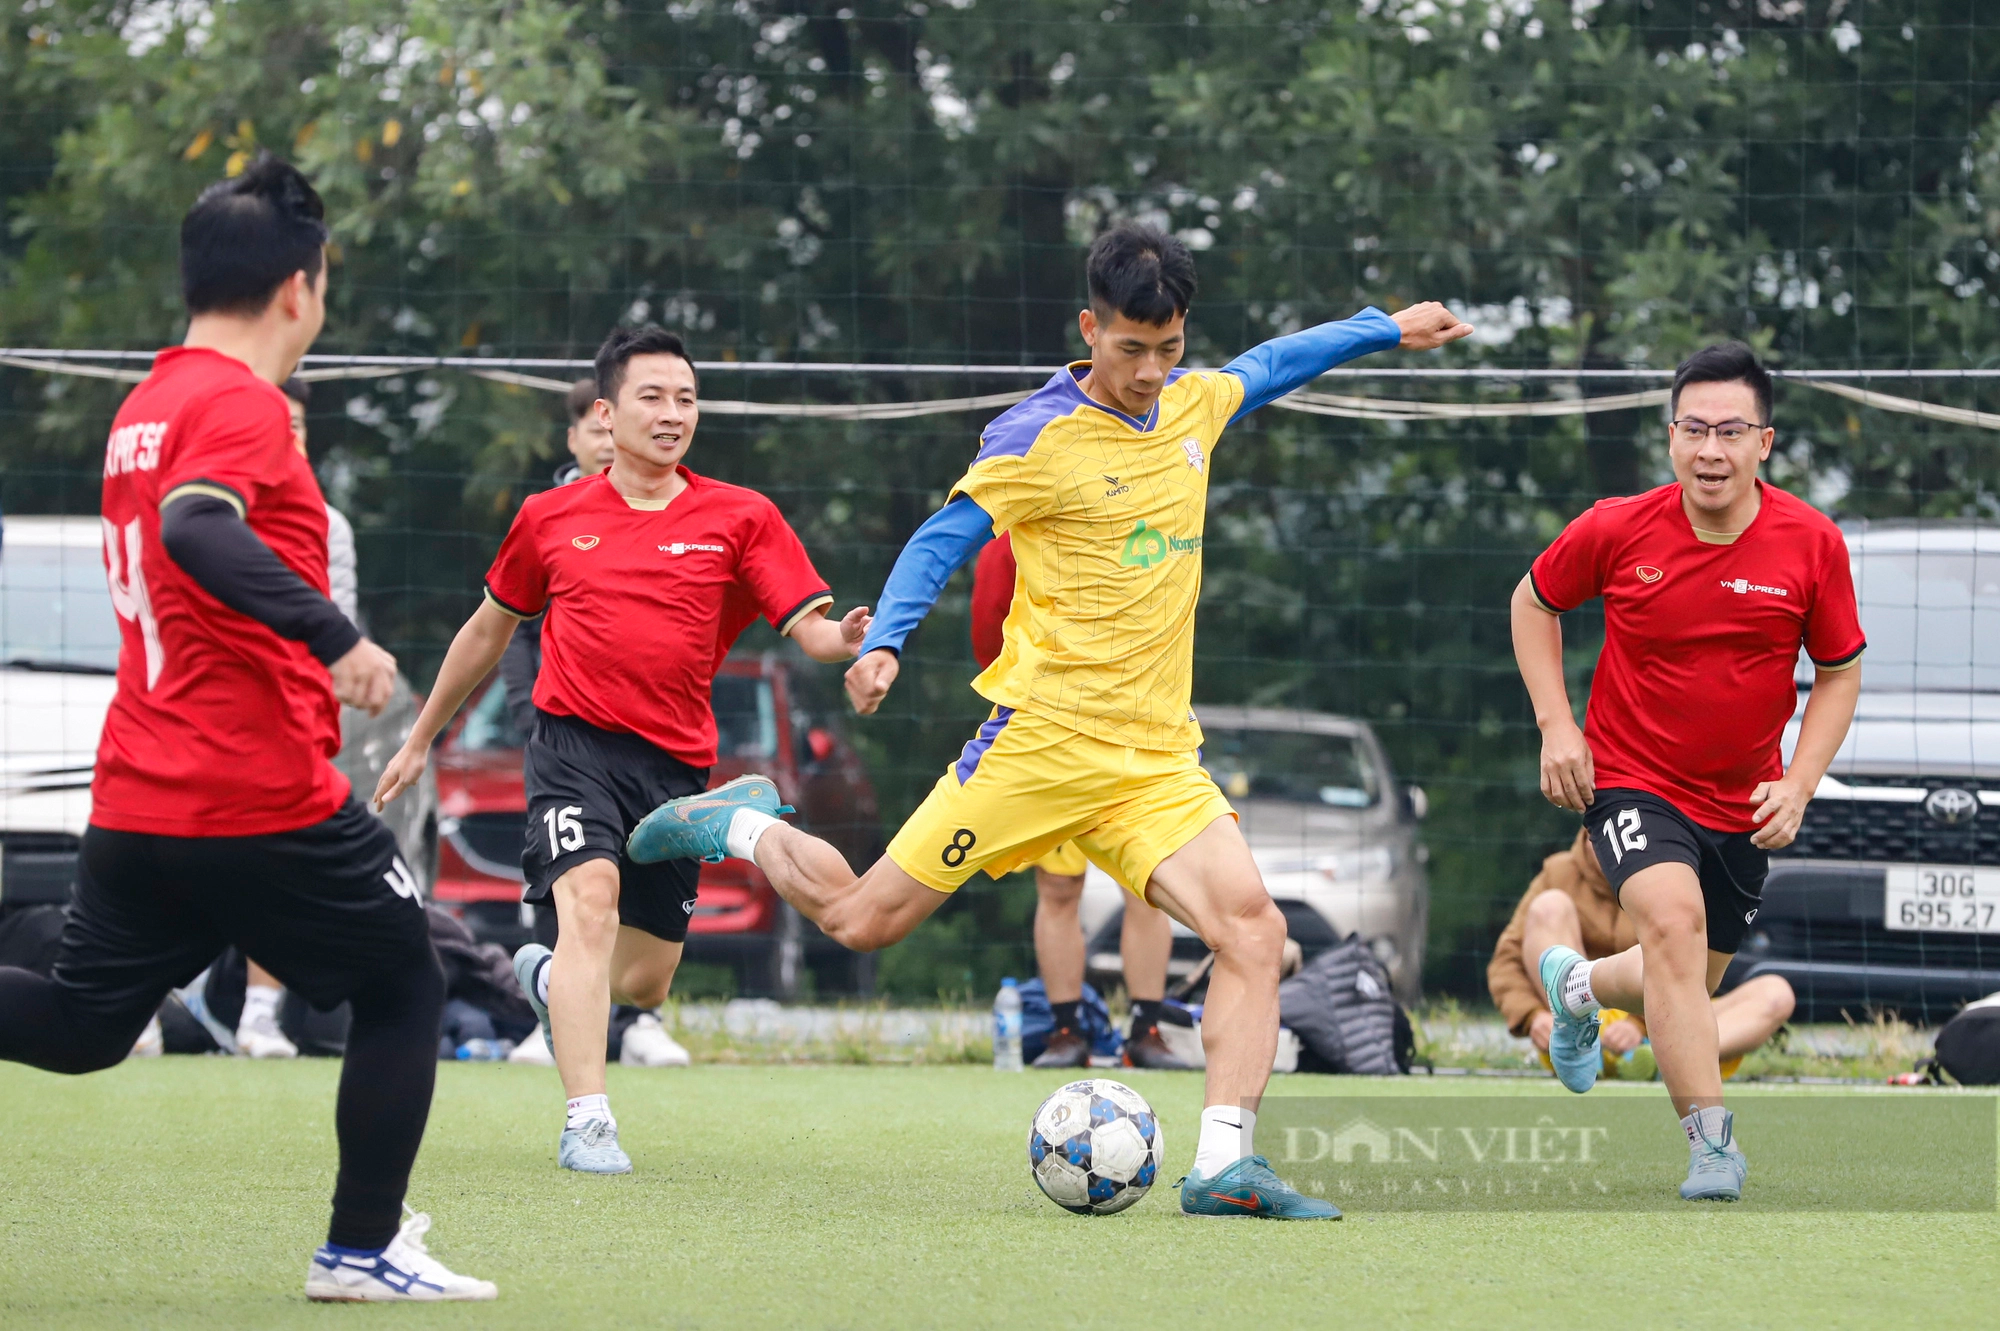 FC Báo NTNN gặp FC Báo chí Nghệ An, VOV đụng độ VTV tại bán kết Giải bóng đá Báo NTNN/Dân Việt 2023 - Ảnh 3.